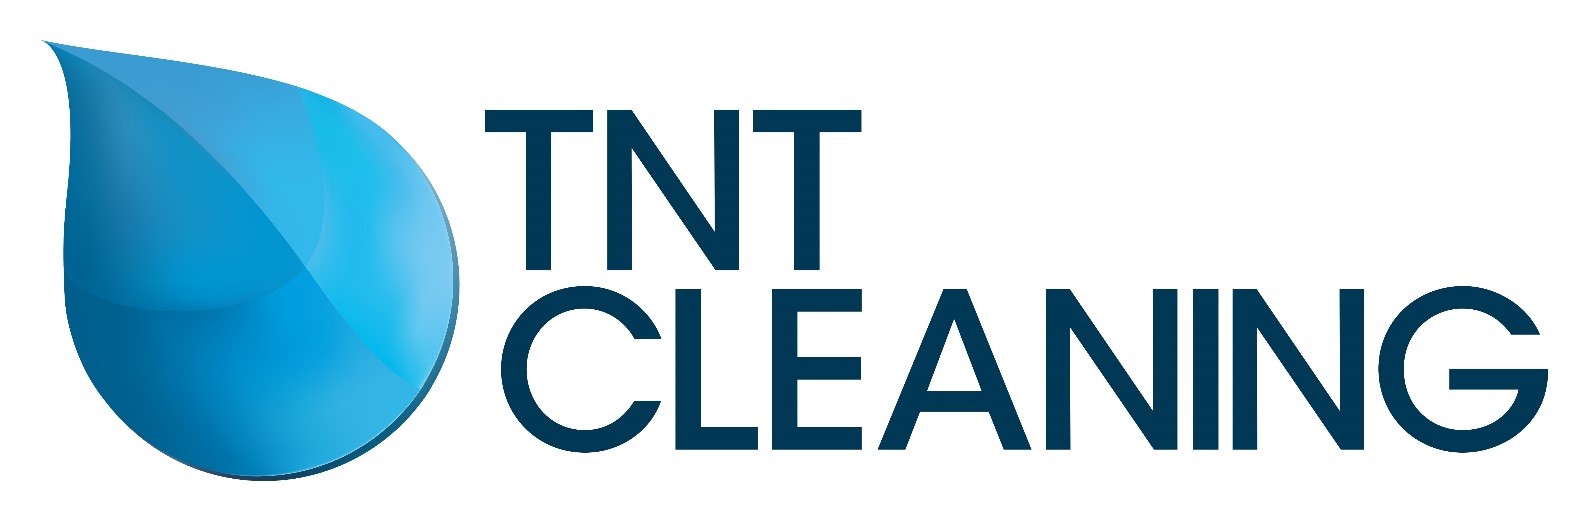 TNT Cleaning Ltd